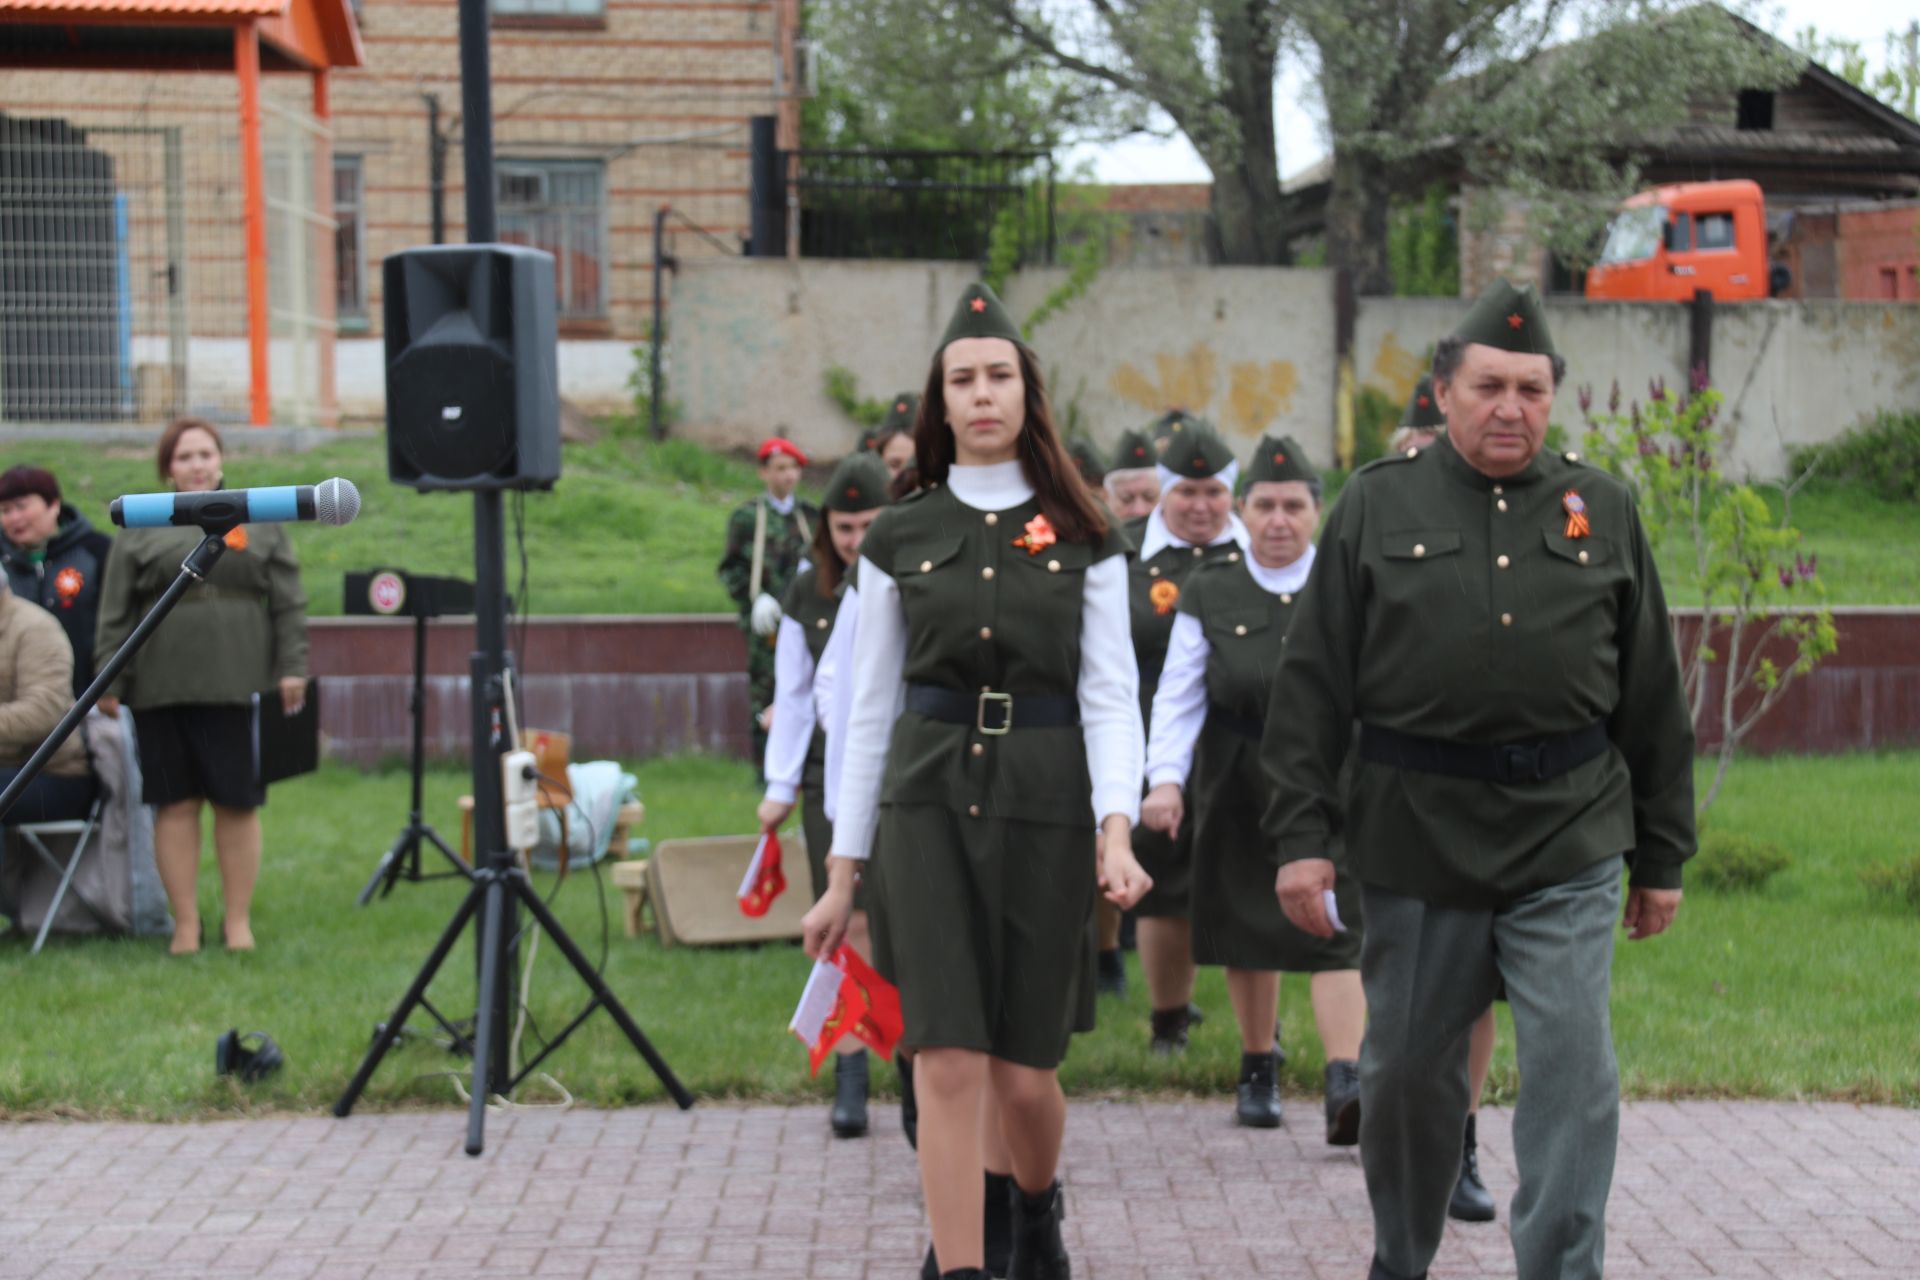 Староуруссинская молодежь — о Великой Отечественной войне